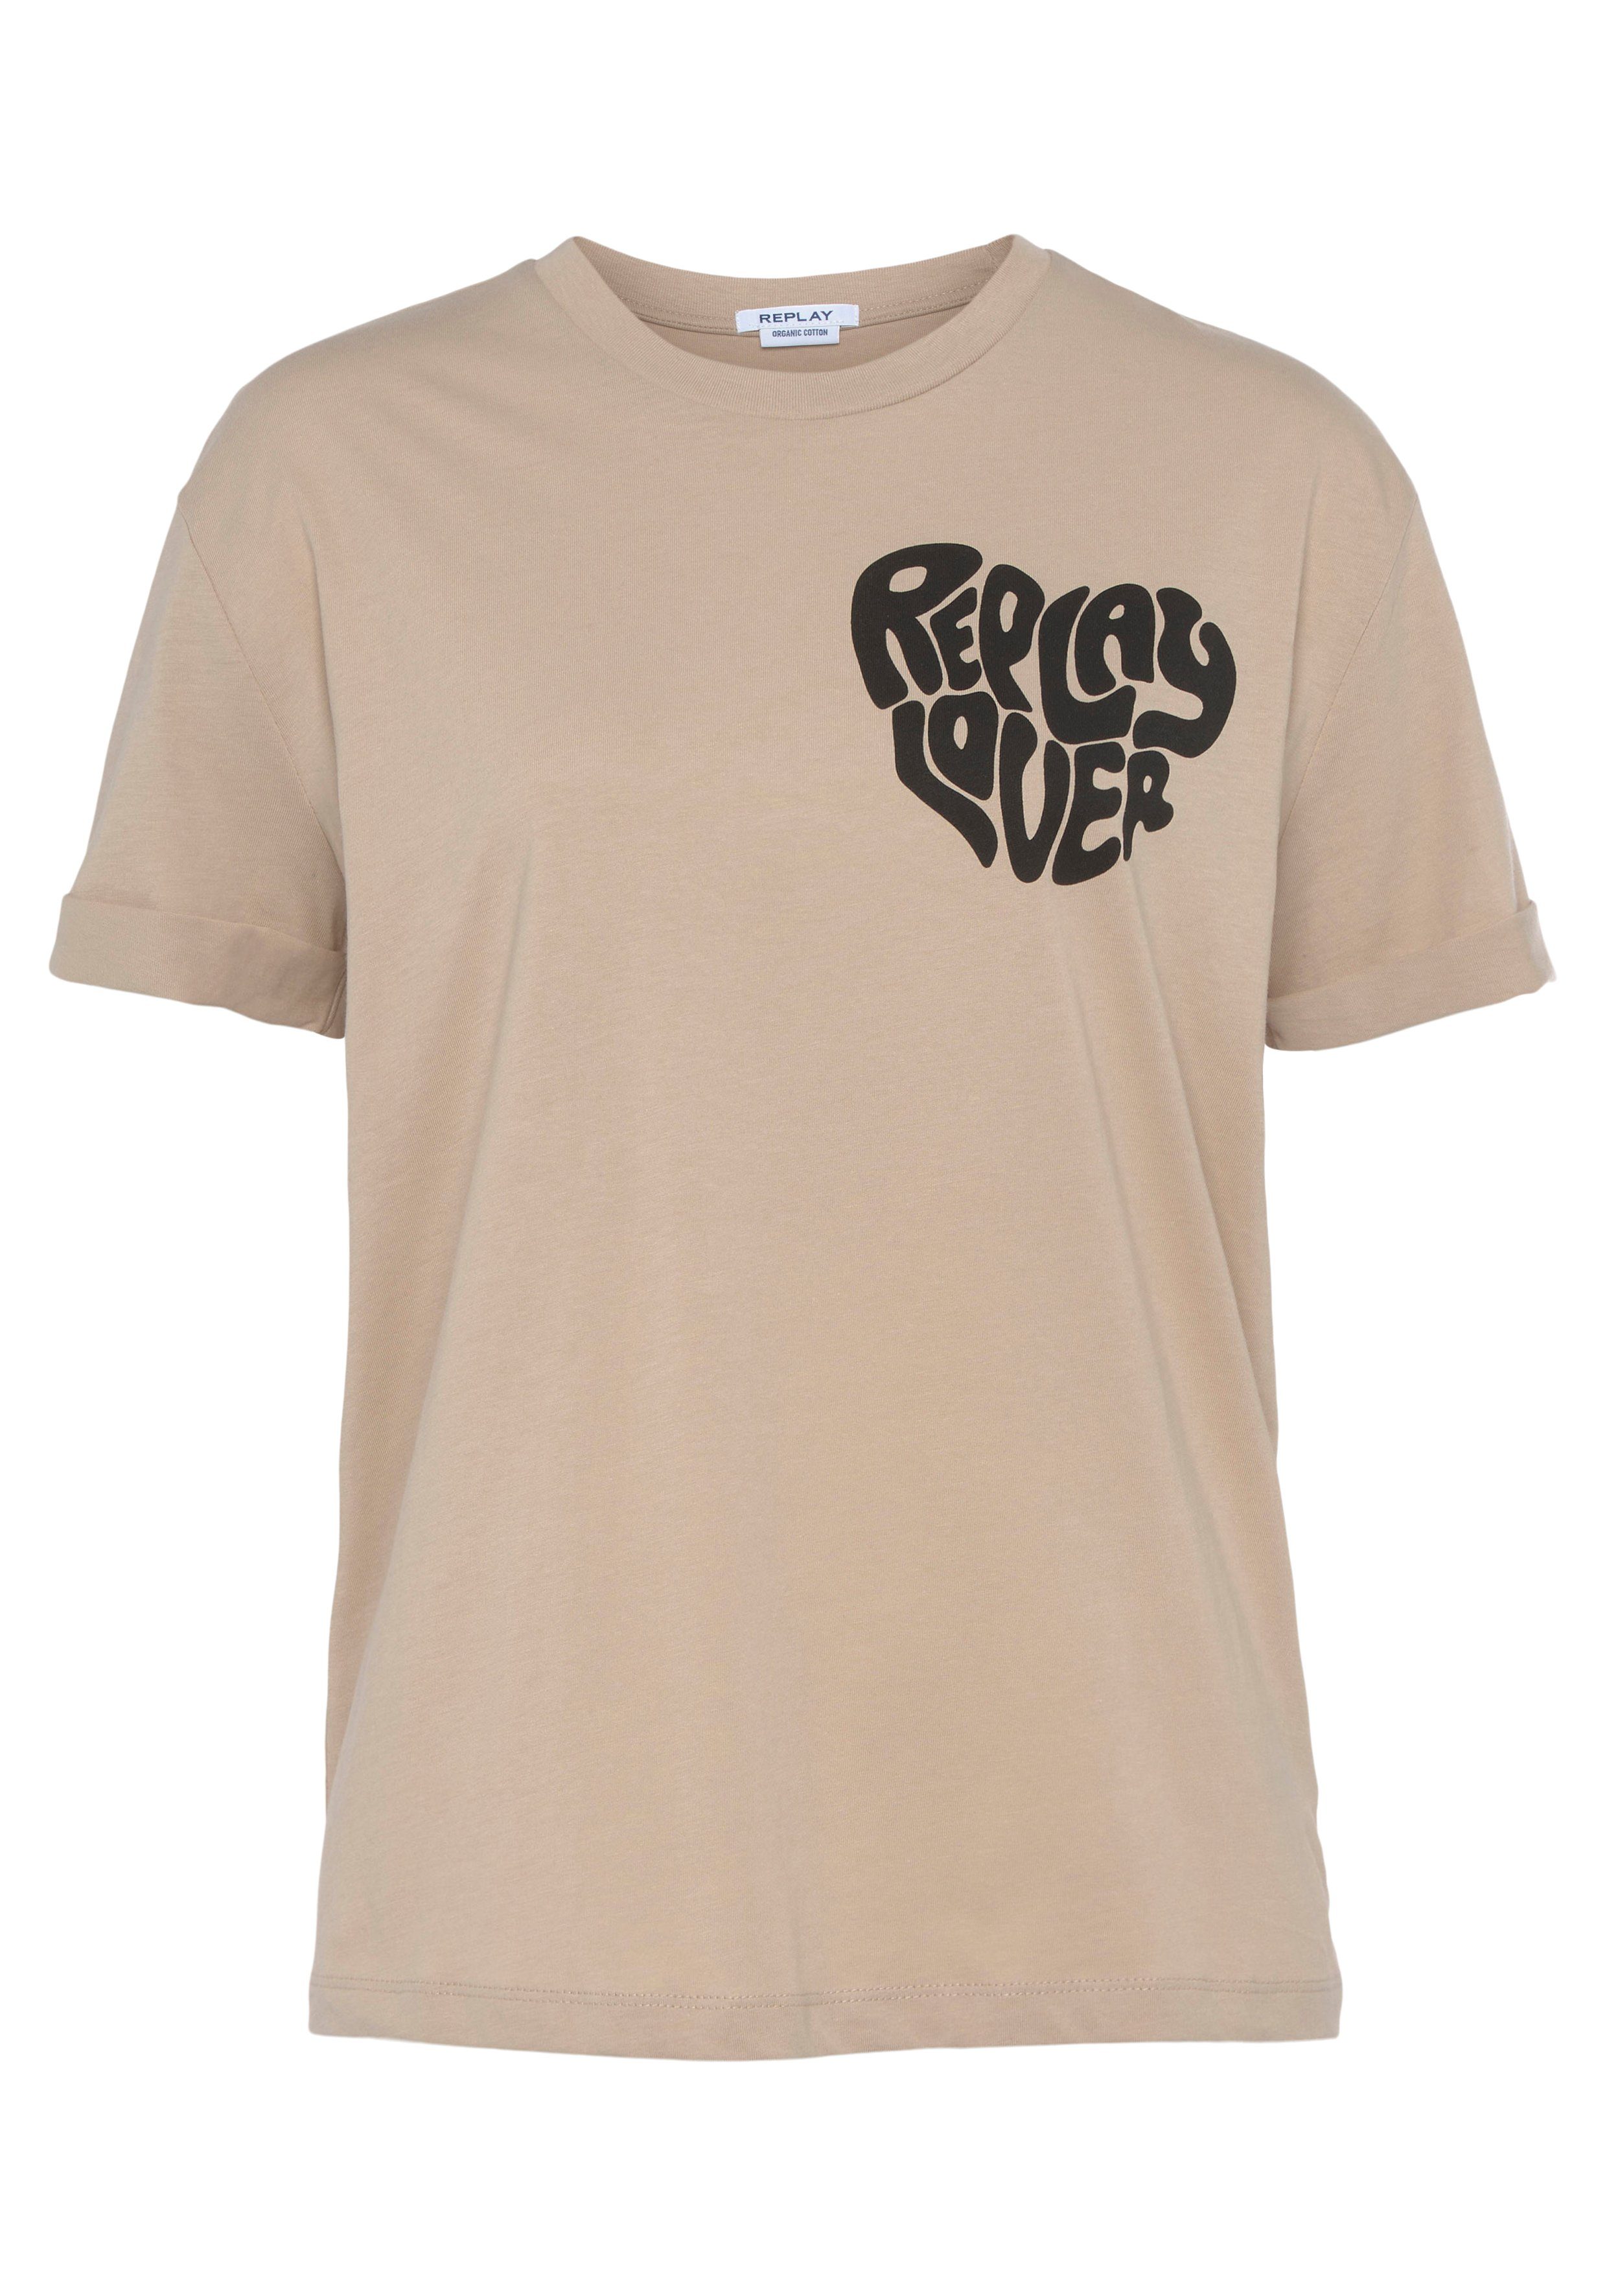 Replay T-Shirt light beige | T-Shirts